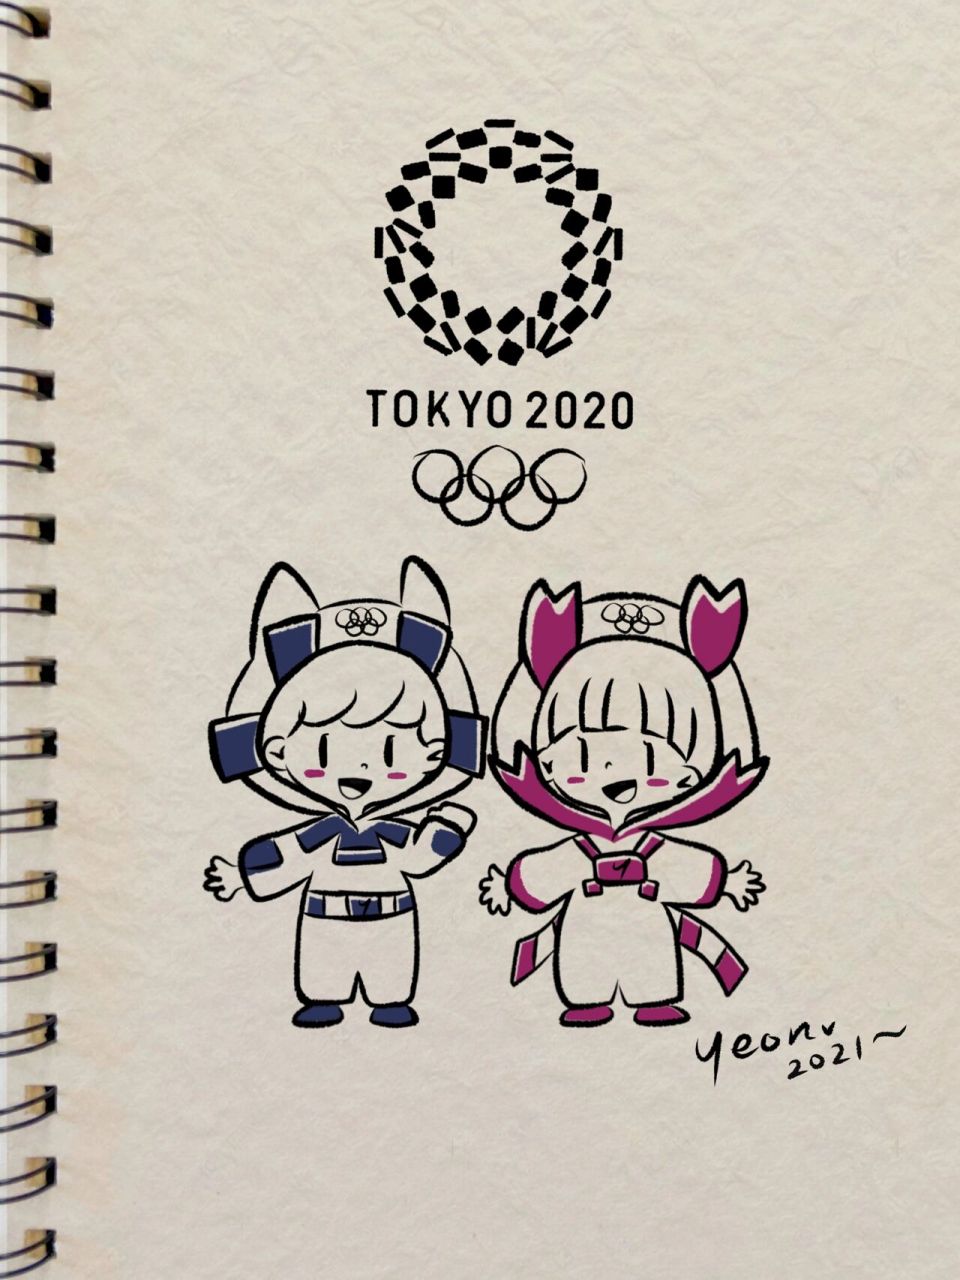 奥运会吉祥物 简笔图片